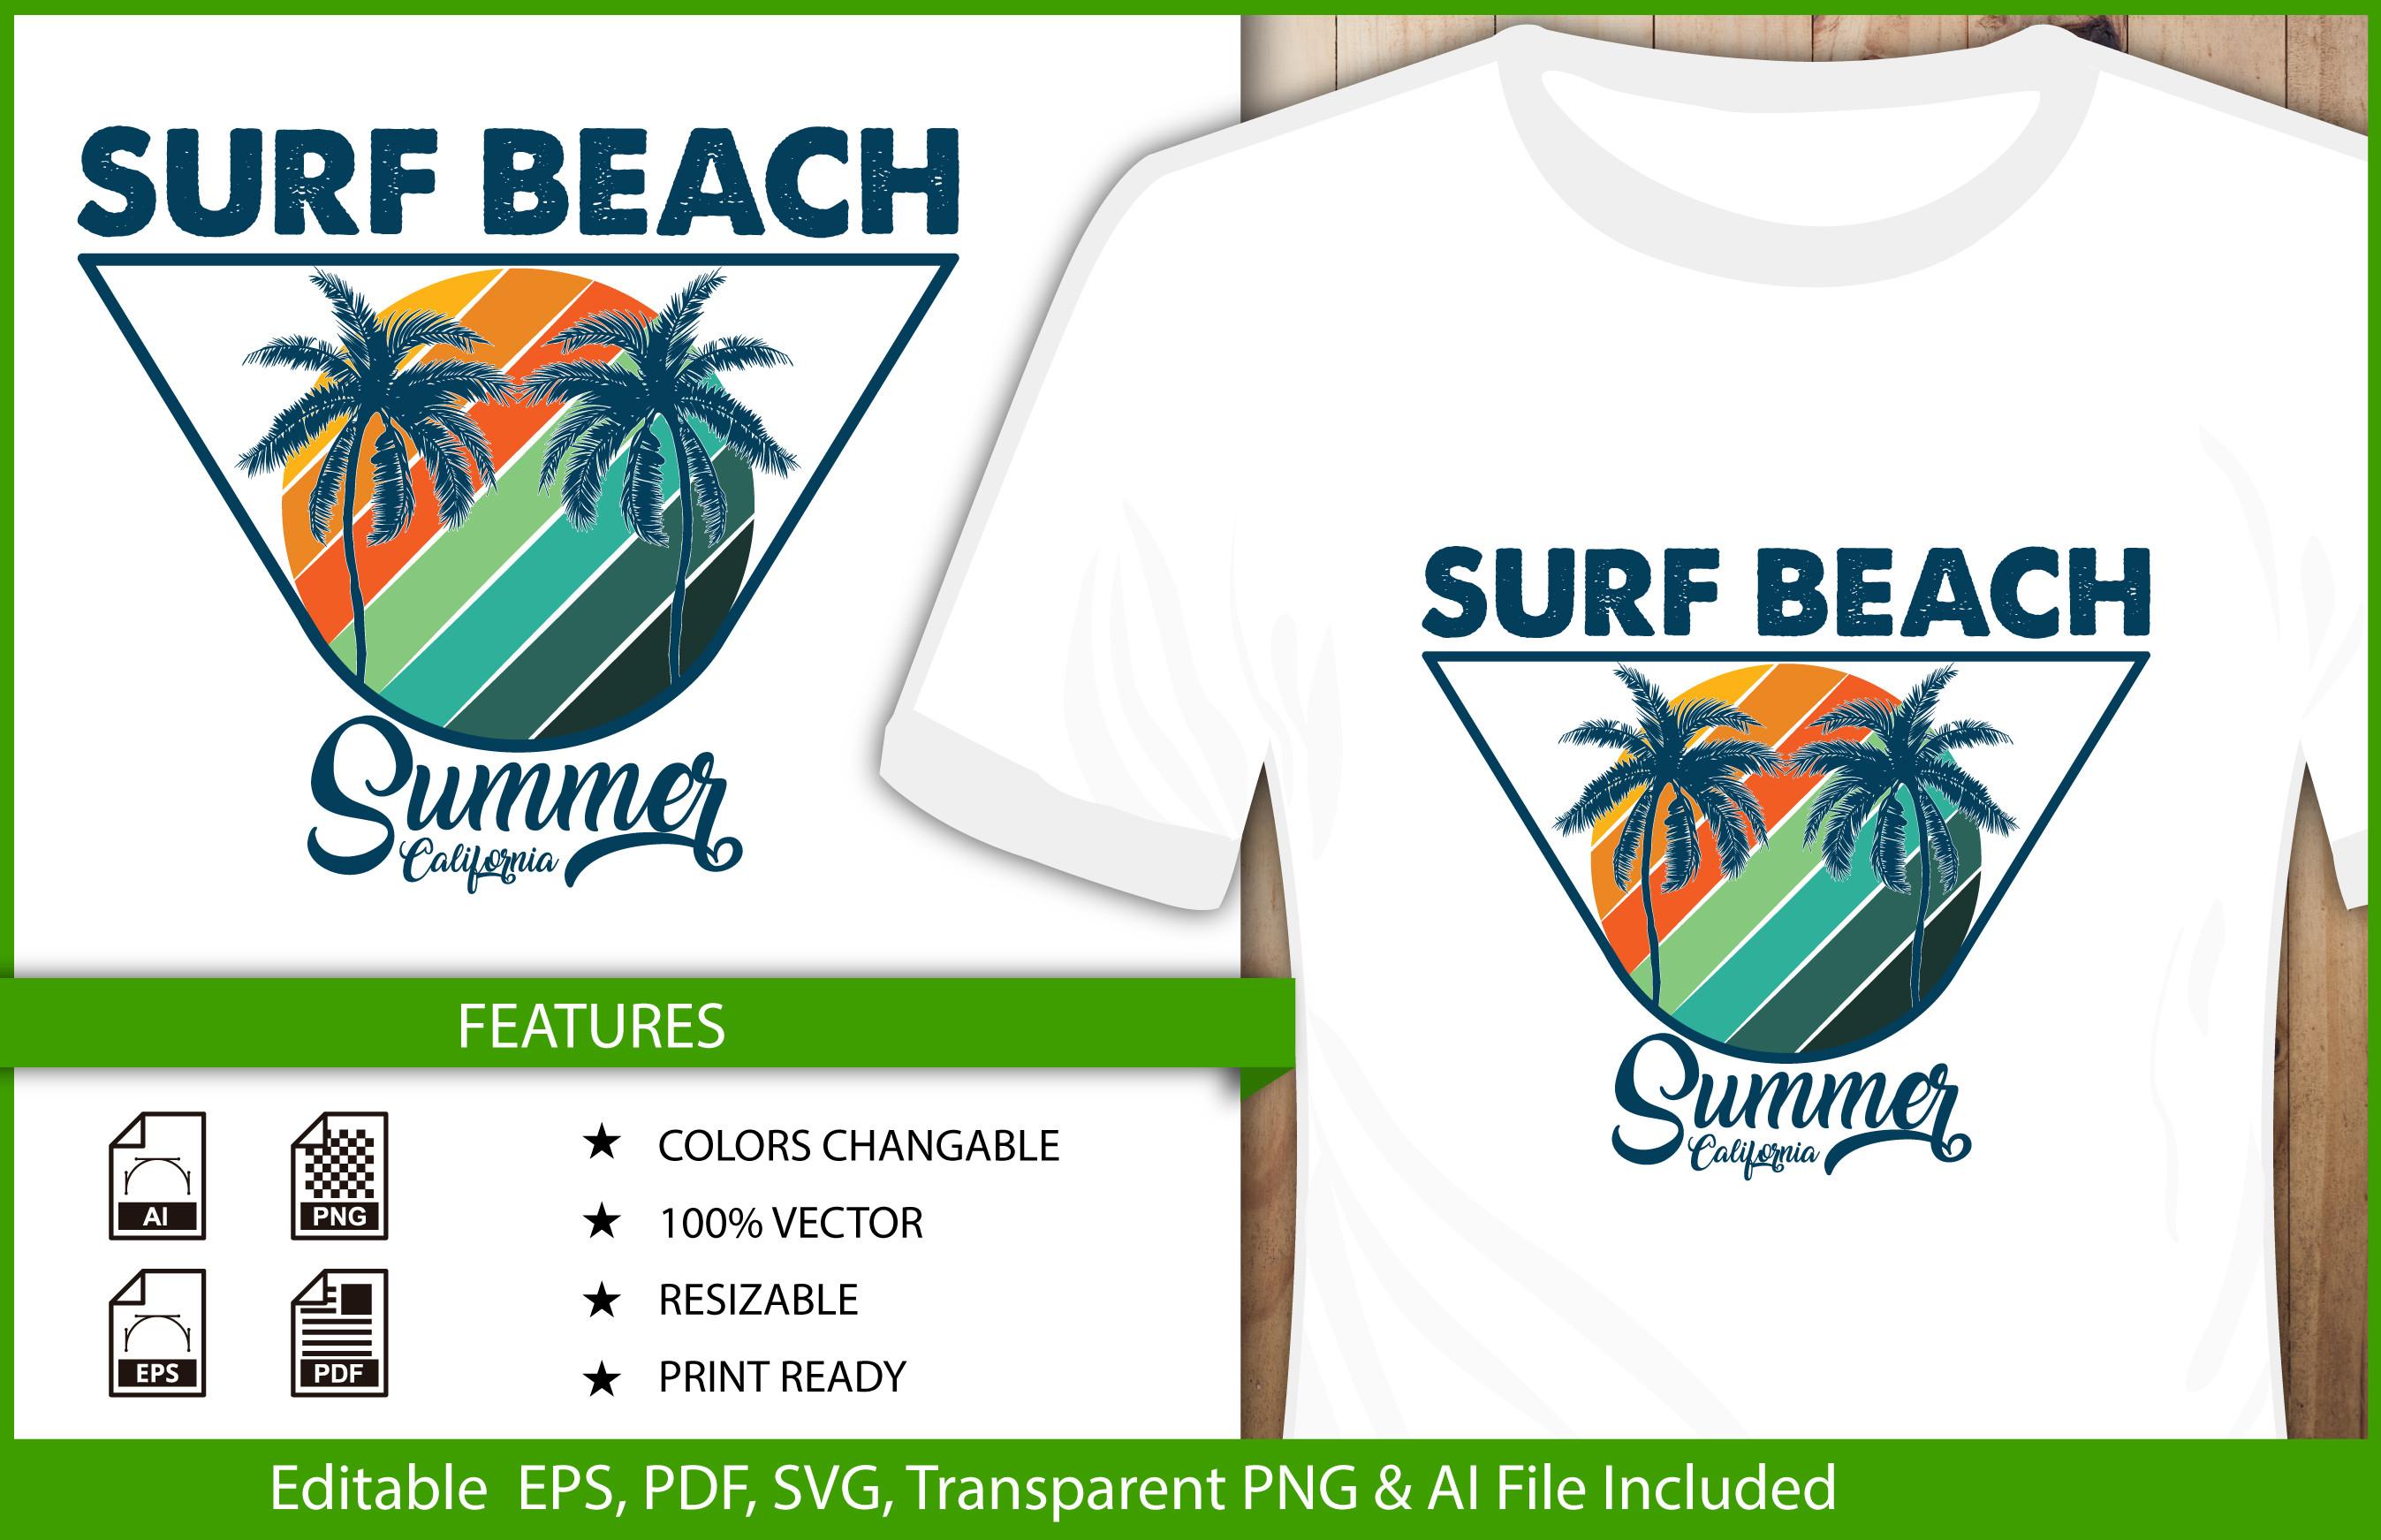 Summer Surf Beach T-shirt Design